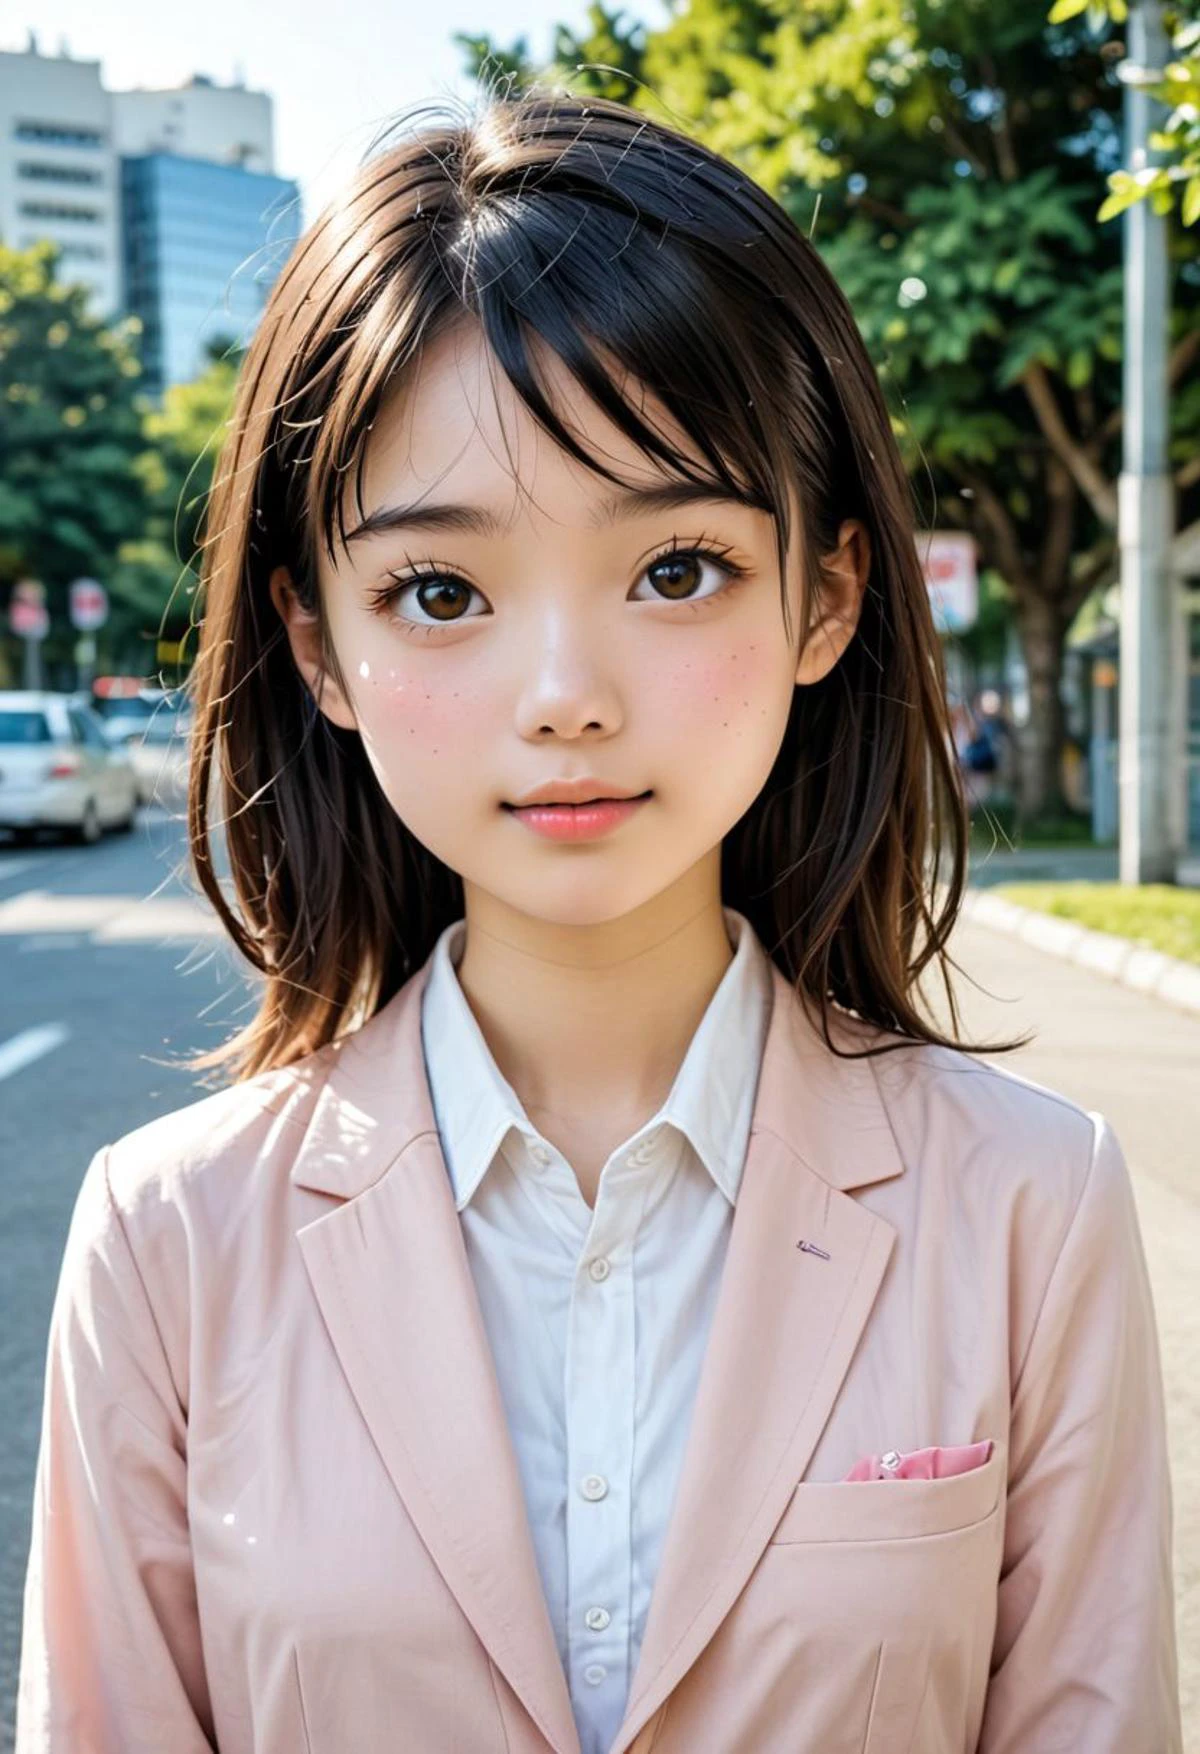 1女孩, 18岁, 非常可爱(卡哇伊), 杰作, 最好的质量, 日本女孩,看着观众, 脸红,在游乐园.专业摄影, 高动态色彩范围,高分辨率图片,原始照片. jpn 女孩,